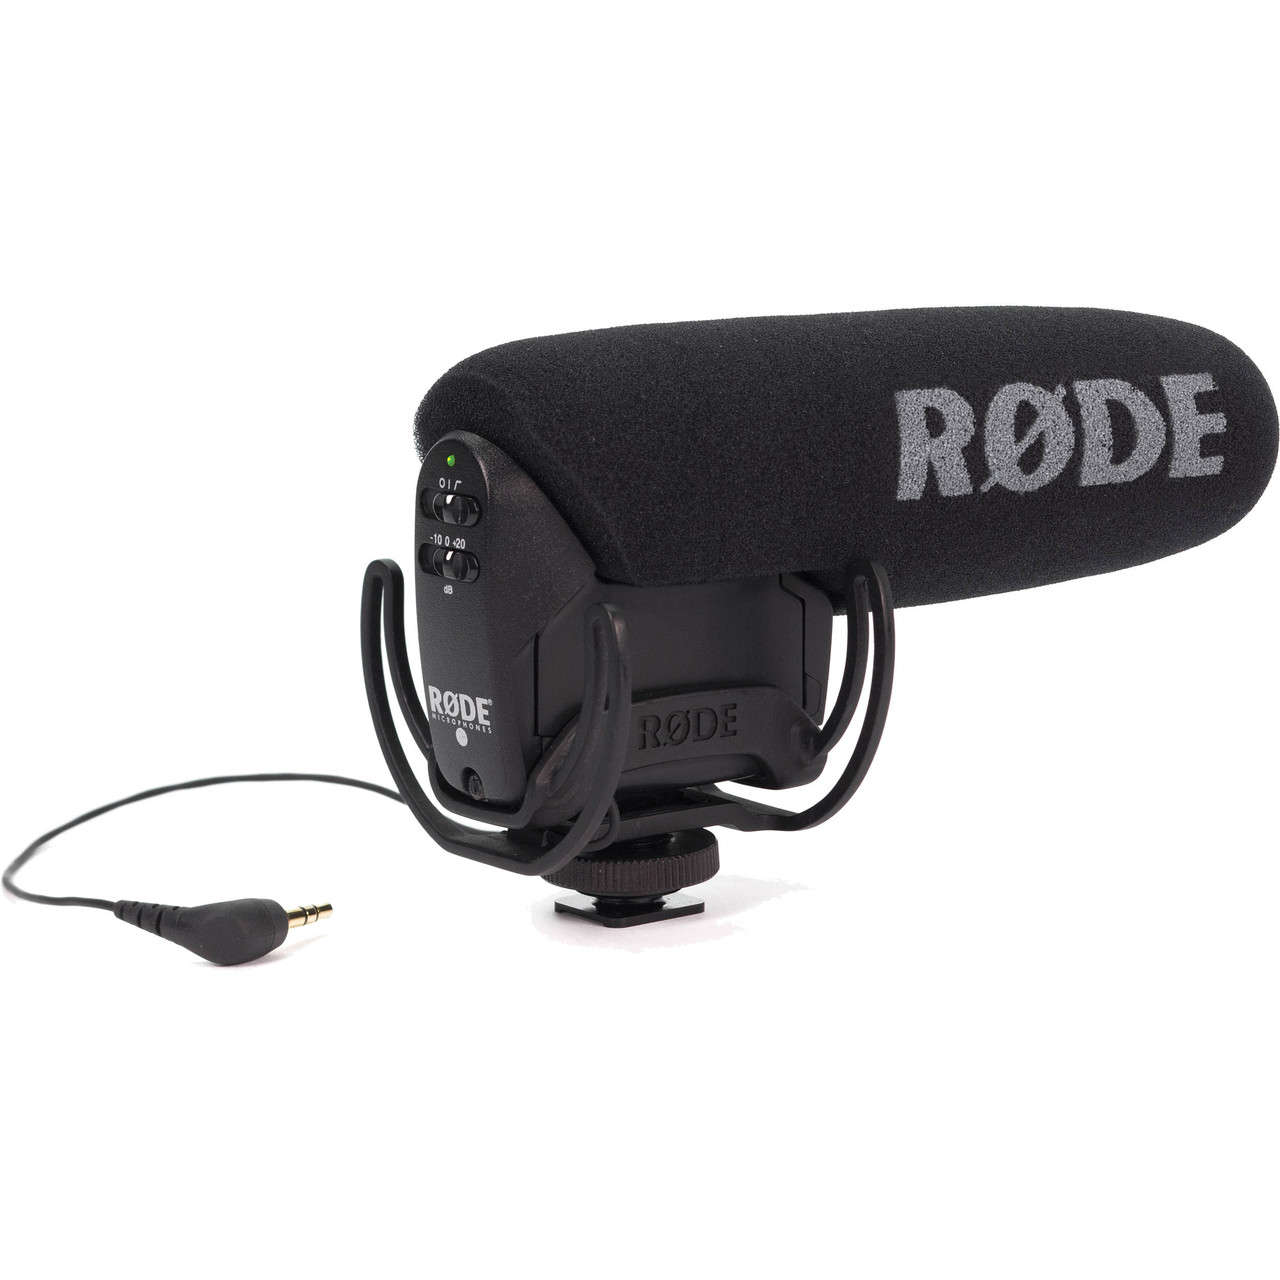 Rode VideoMic Camera-Mount Shotgun Microphone